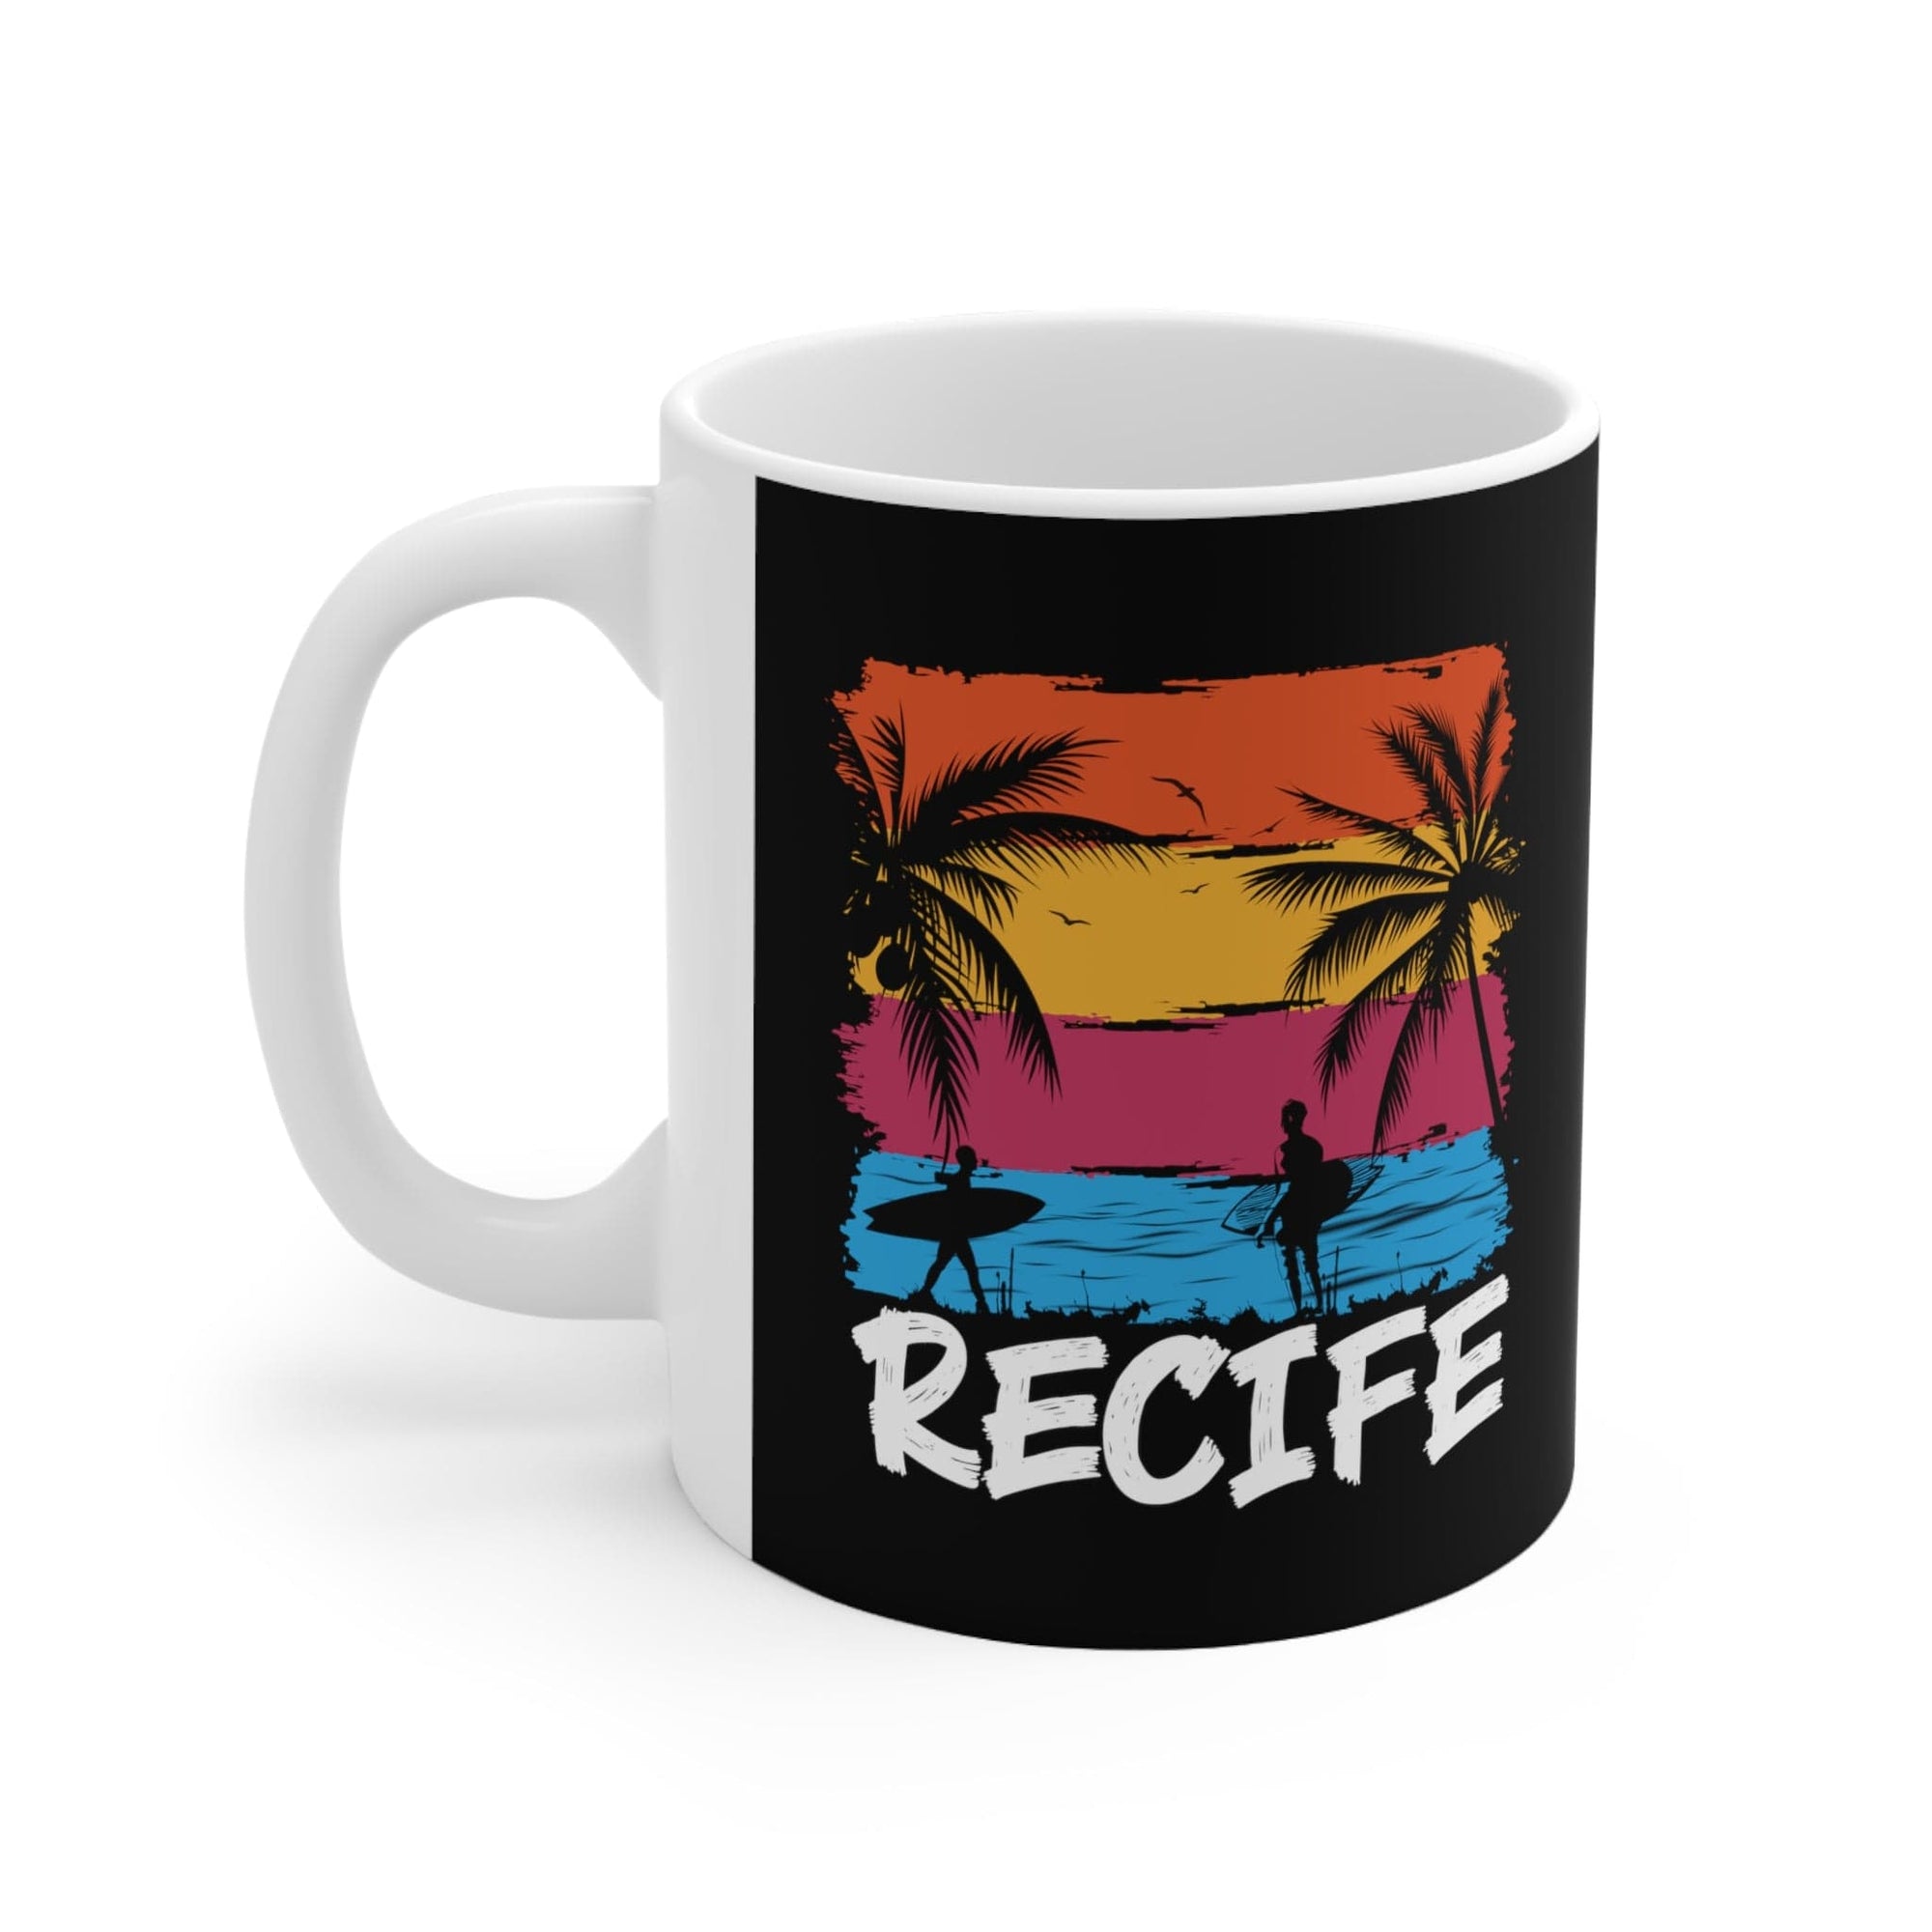 RECIFE - Awesome Ceramic Mug, Exclusive Design